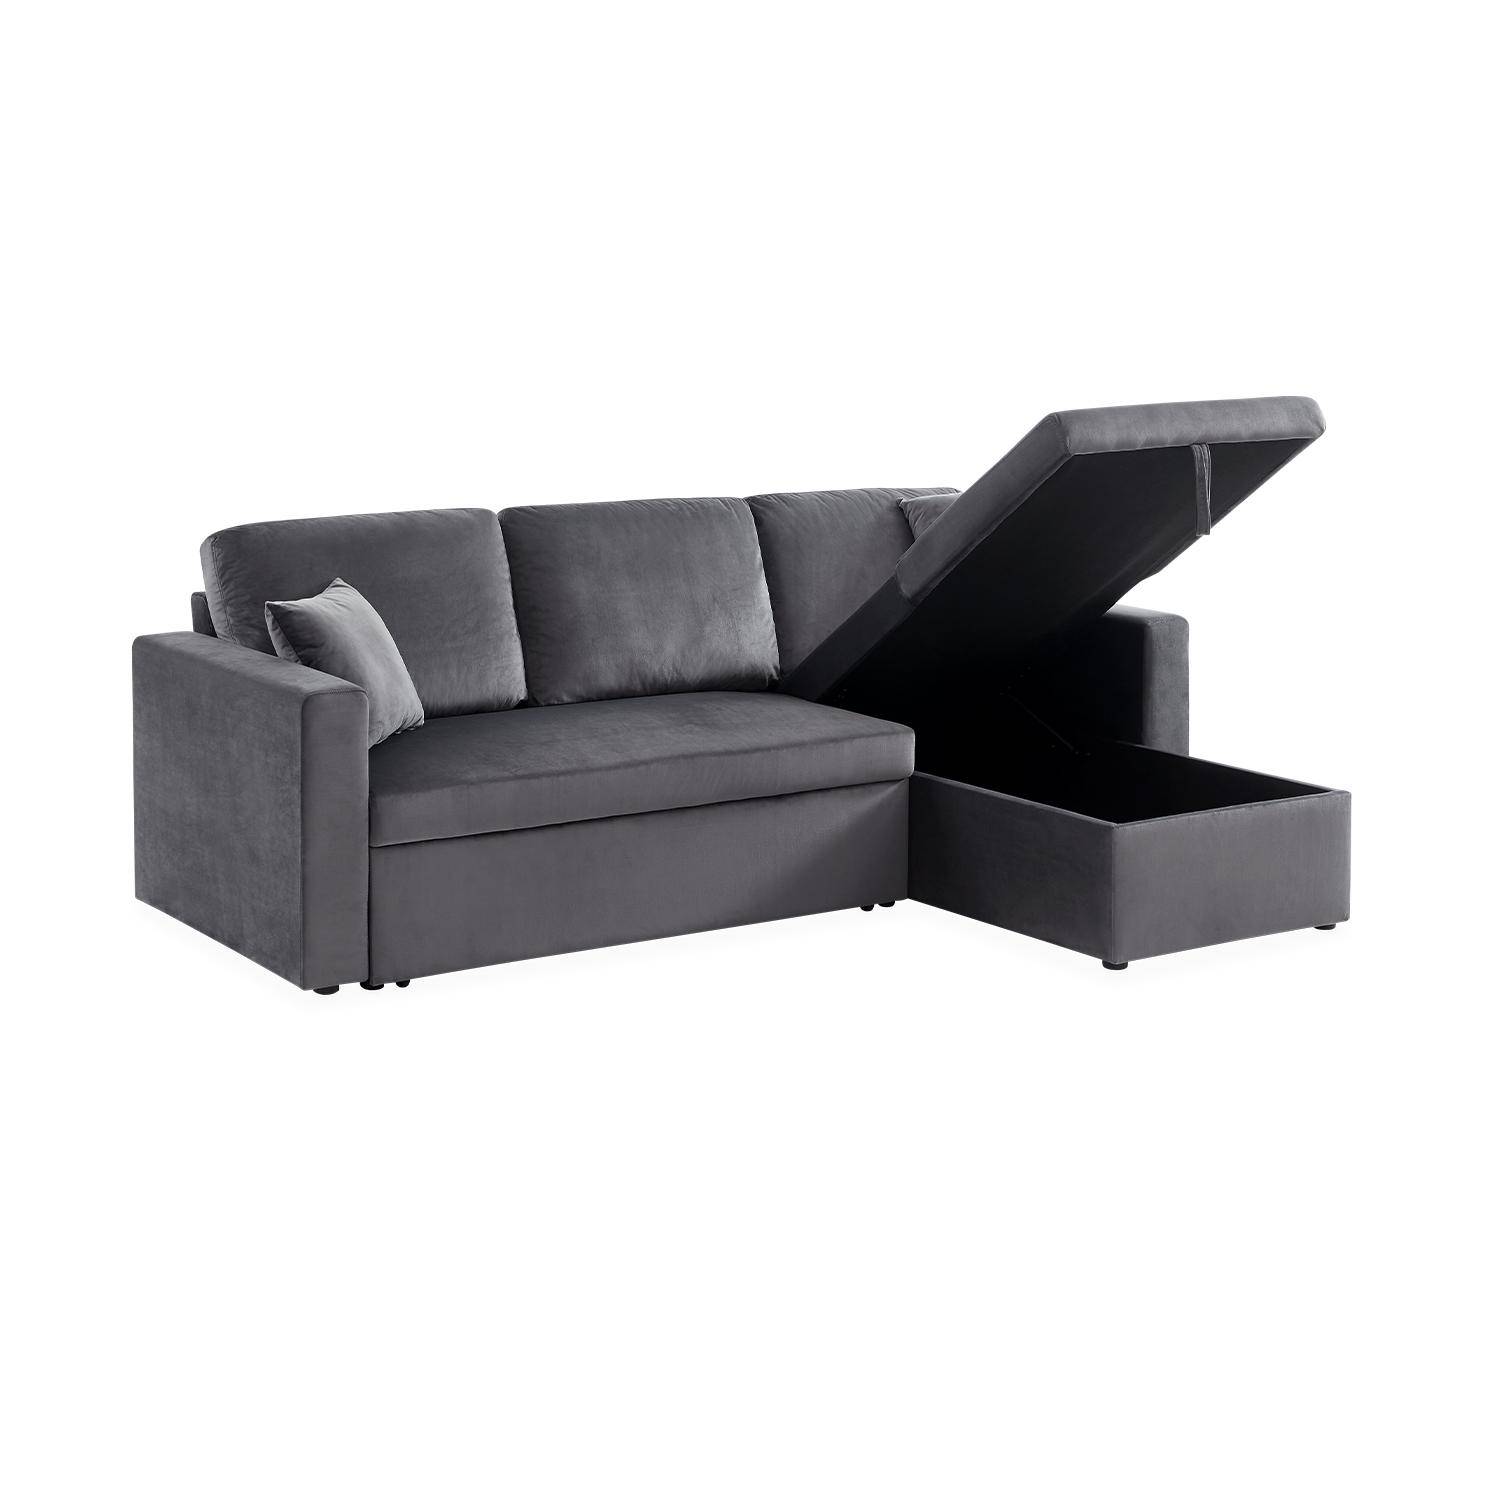 Sofá esquinero convertible de 3 plazas de terciopelo gris oscuro, sillón esquinero reversible, caja de almacenaje, cama modular Photo5